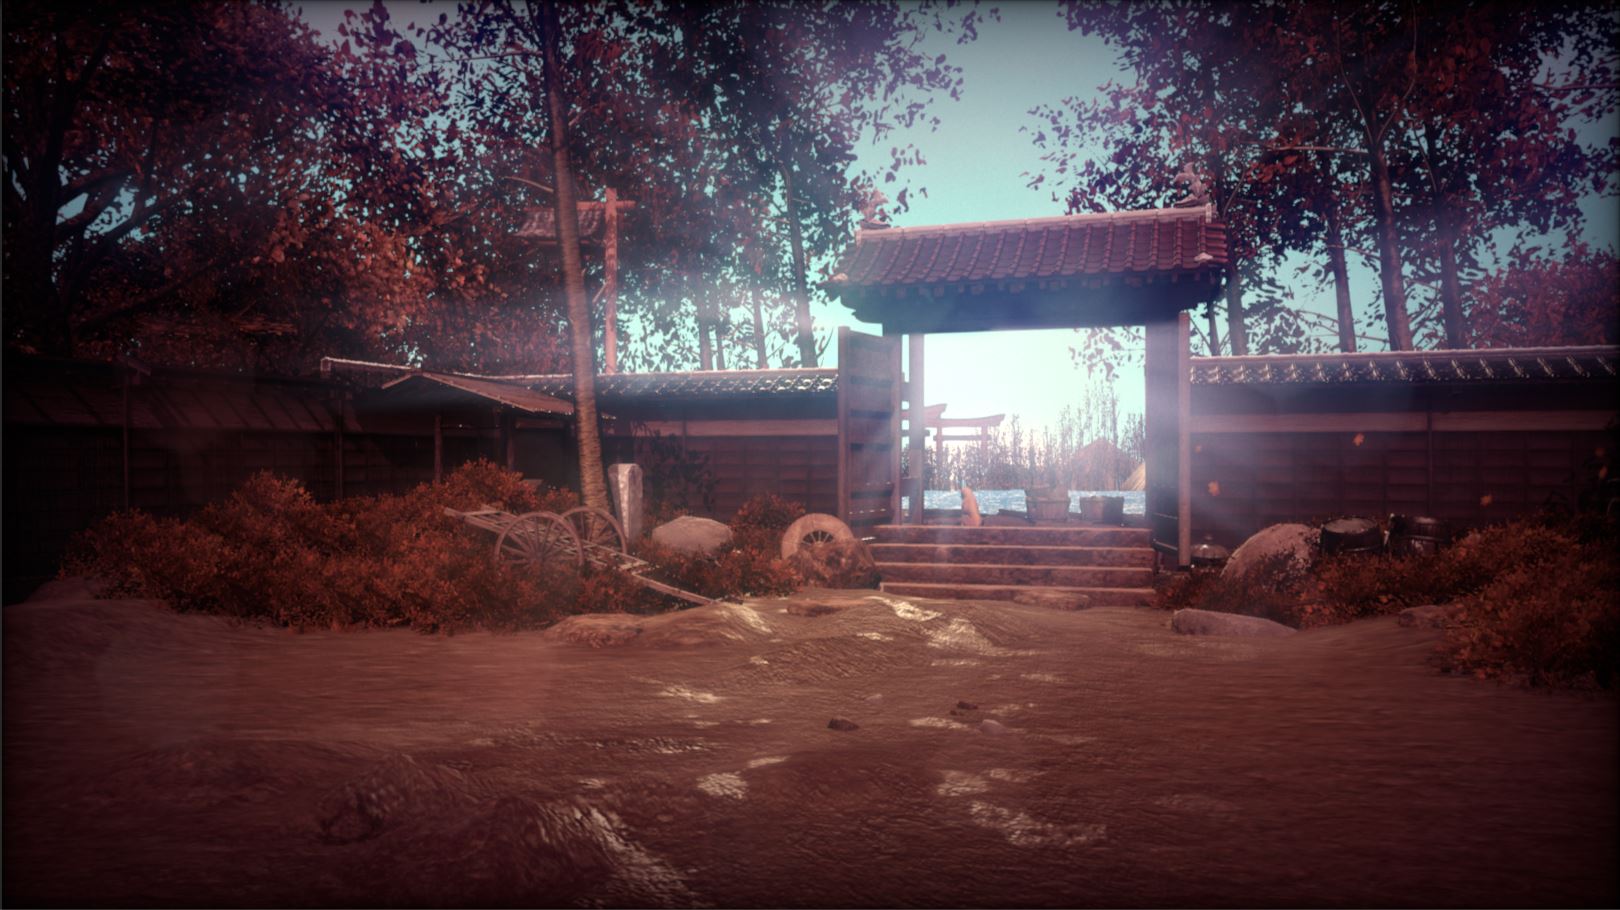 Shaolin vs Wutang screenshot